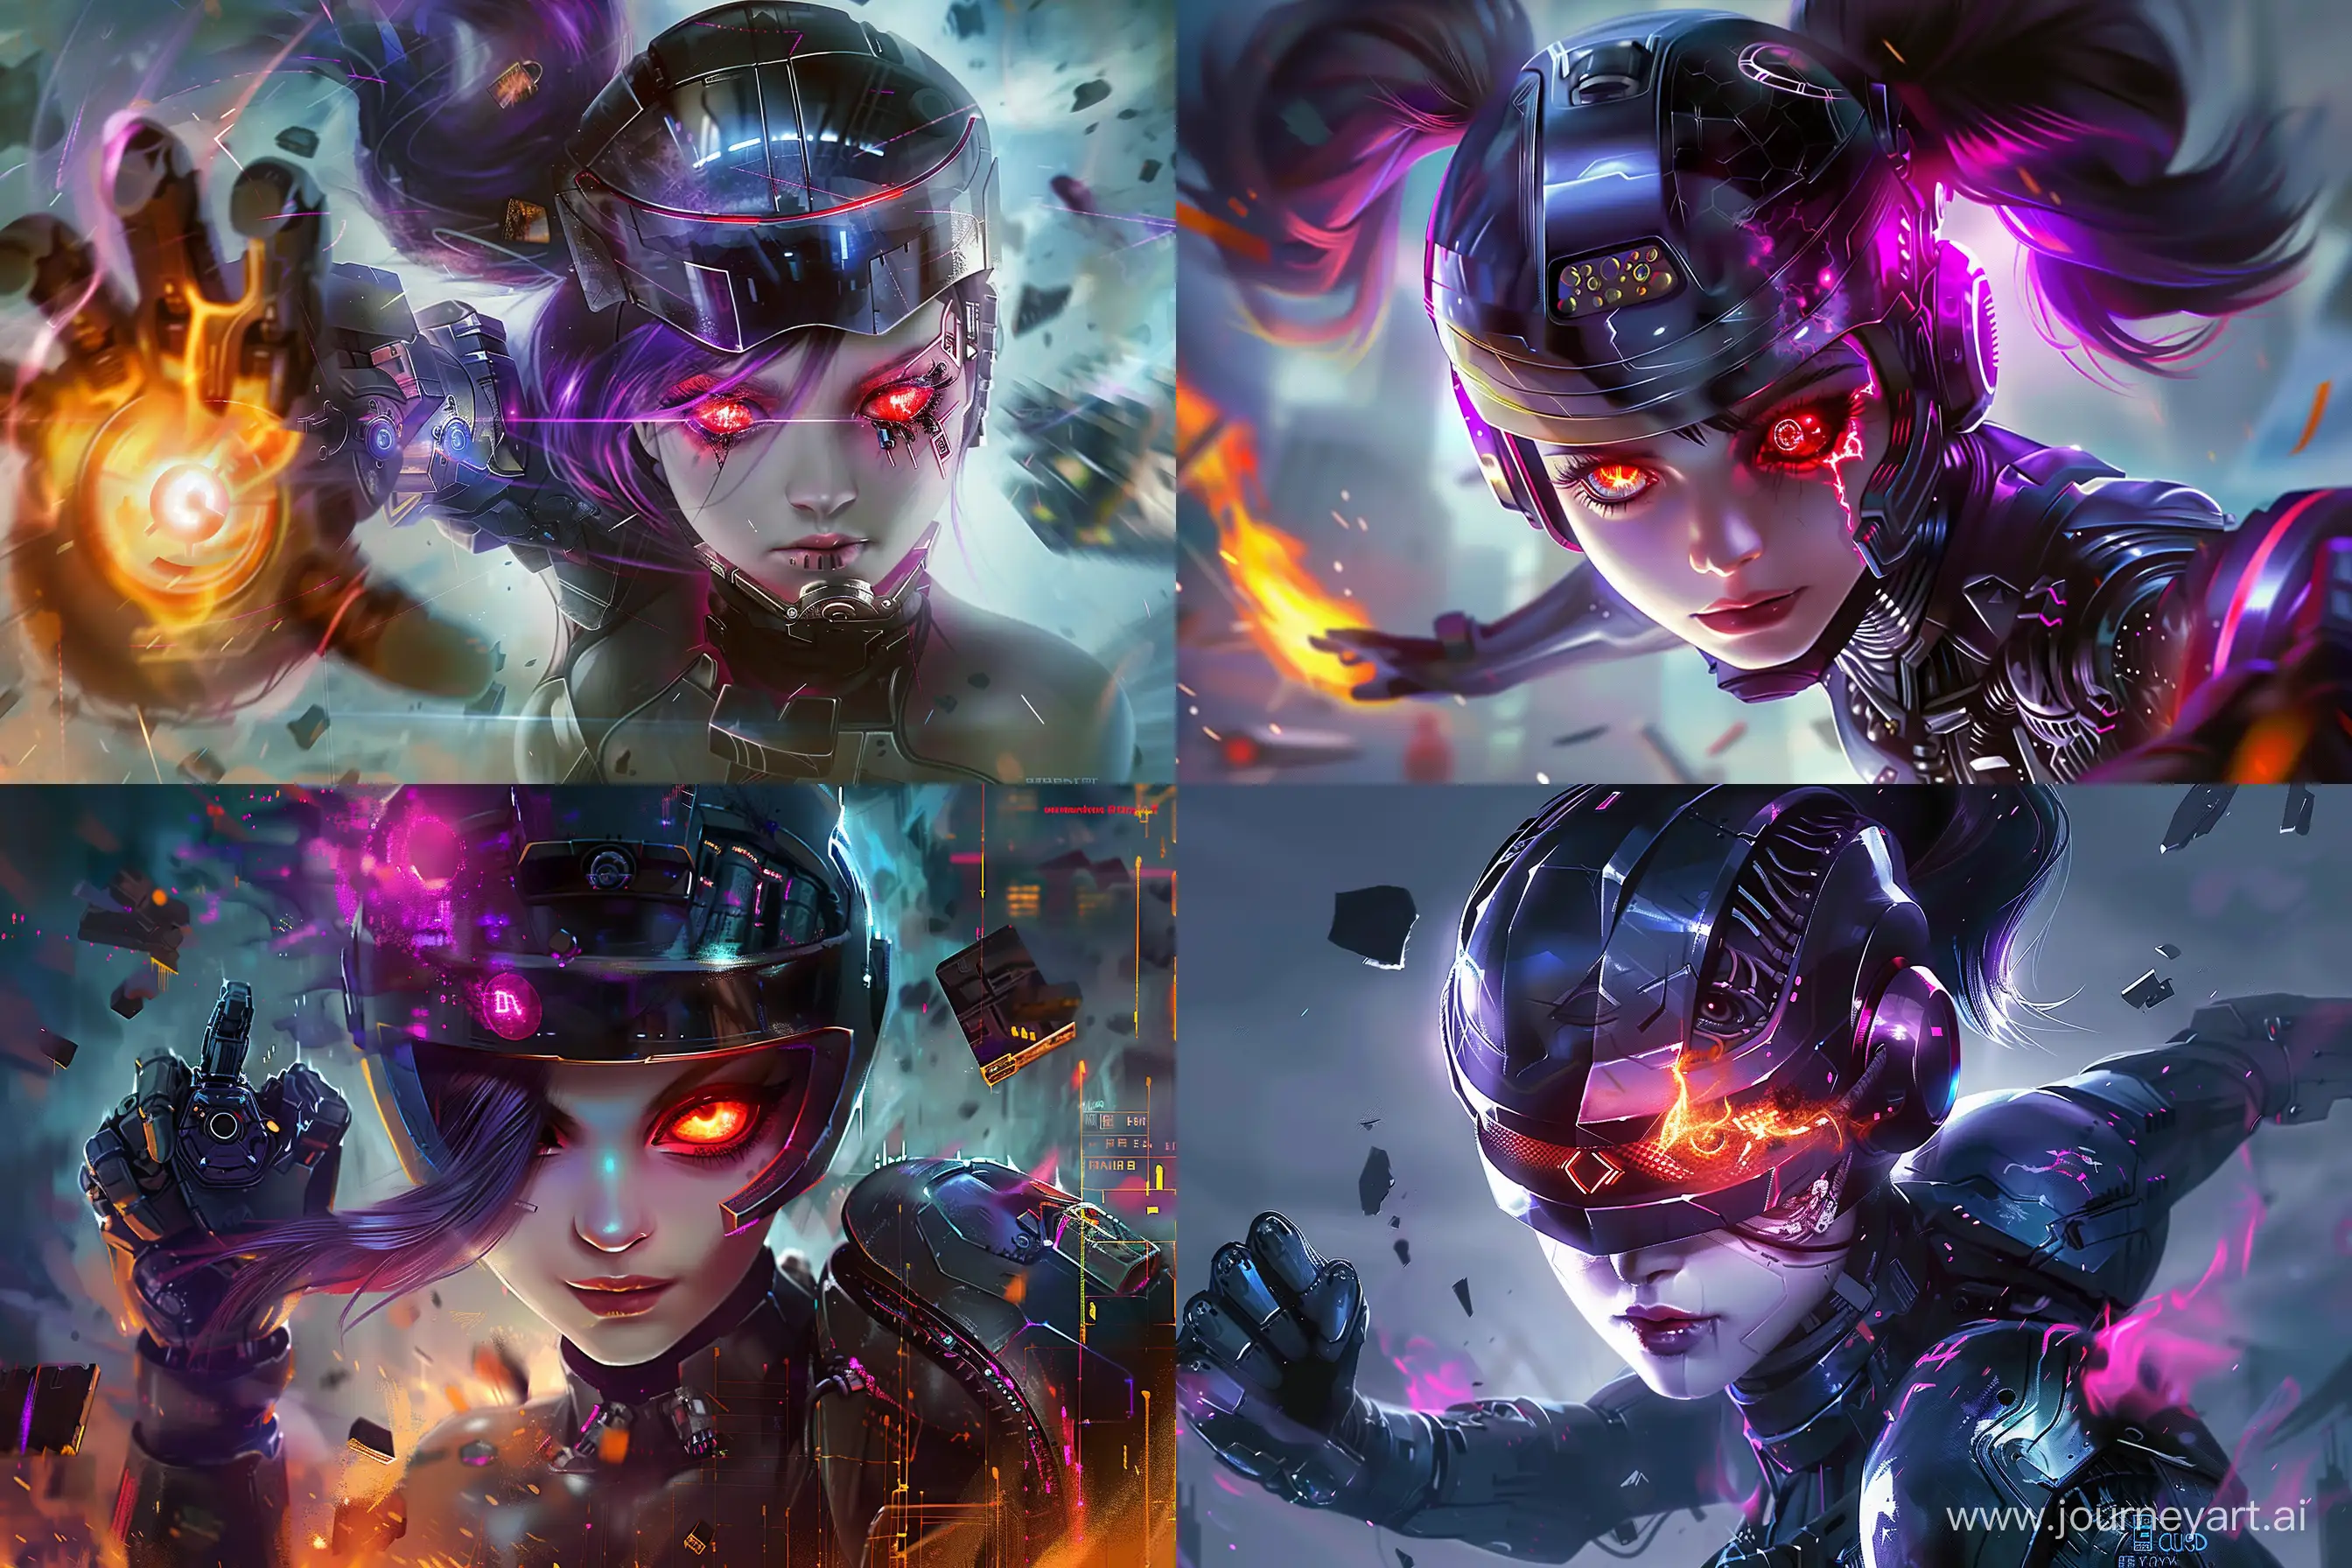 https://i.postimg.cc/SxWVrH4F/lylia-mobile-legends-ml-wallpaper-2000x1333-39.jpg девочка с горящим красным глазом и шлемом как у робокопа, киберкубийца, робот, импланты, --ar 3:2